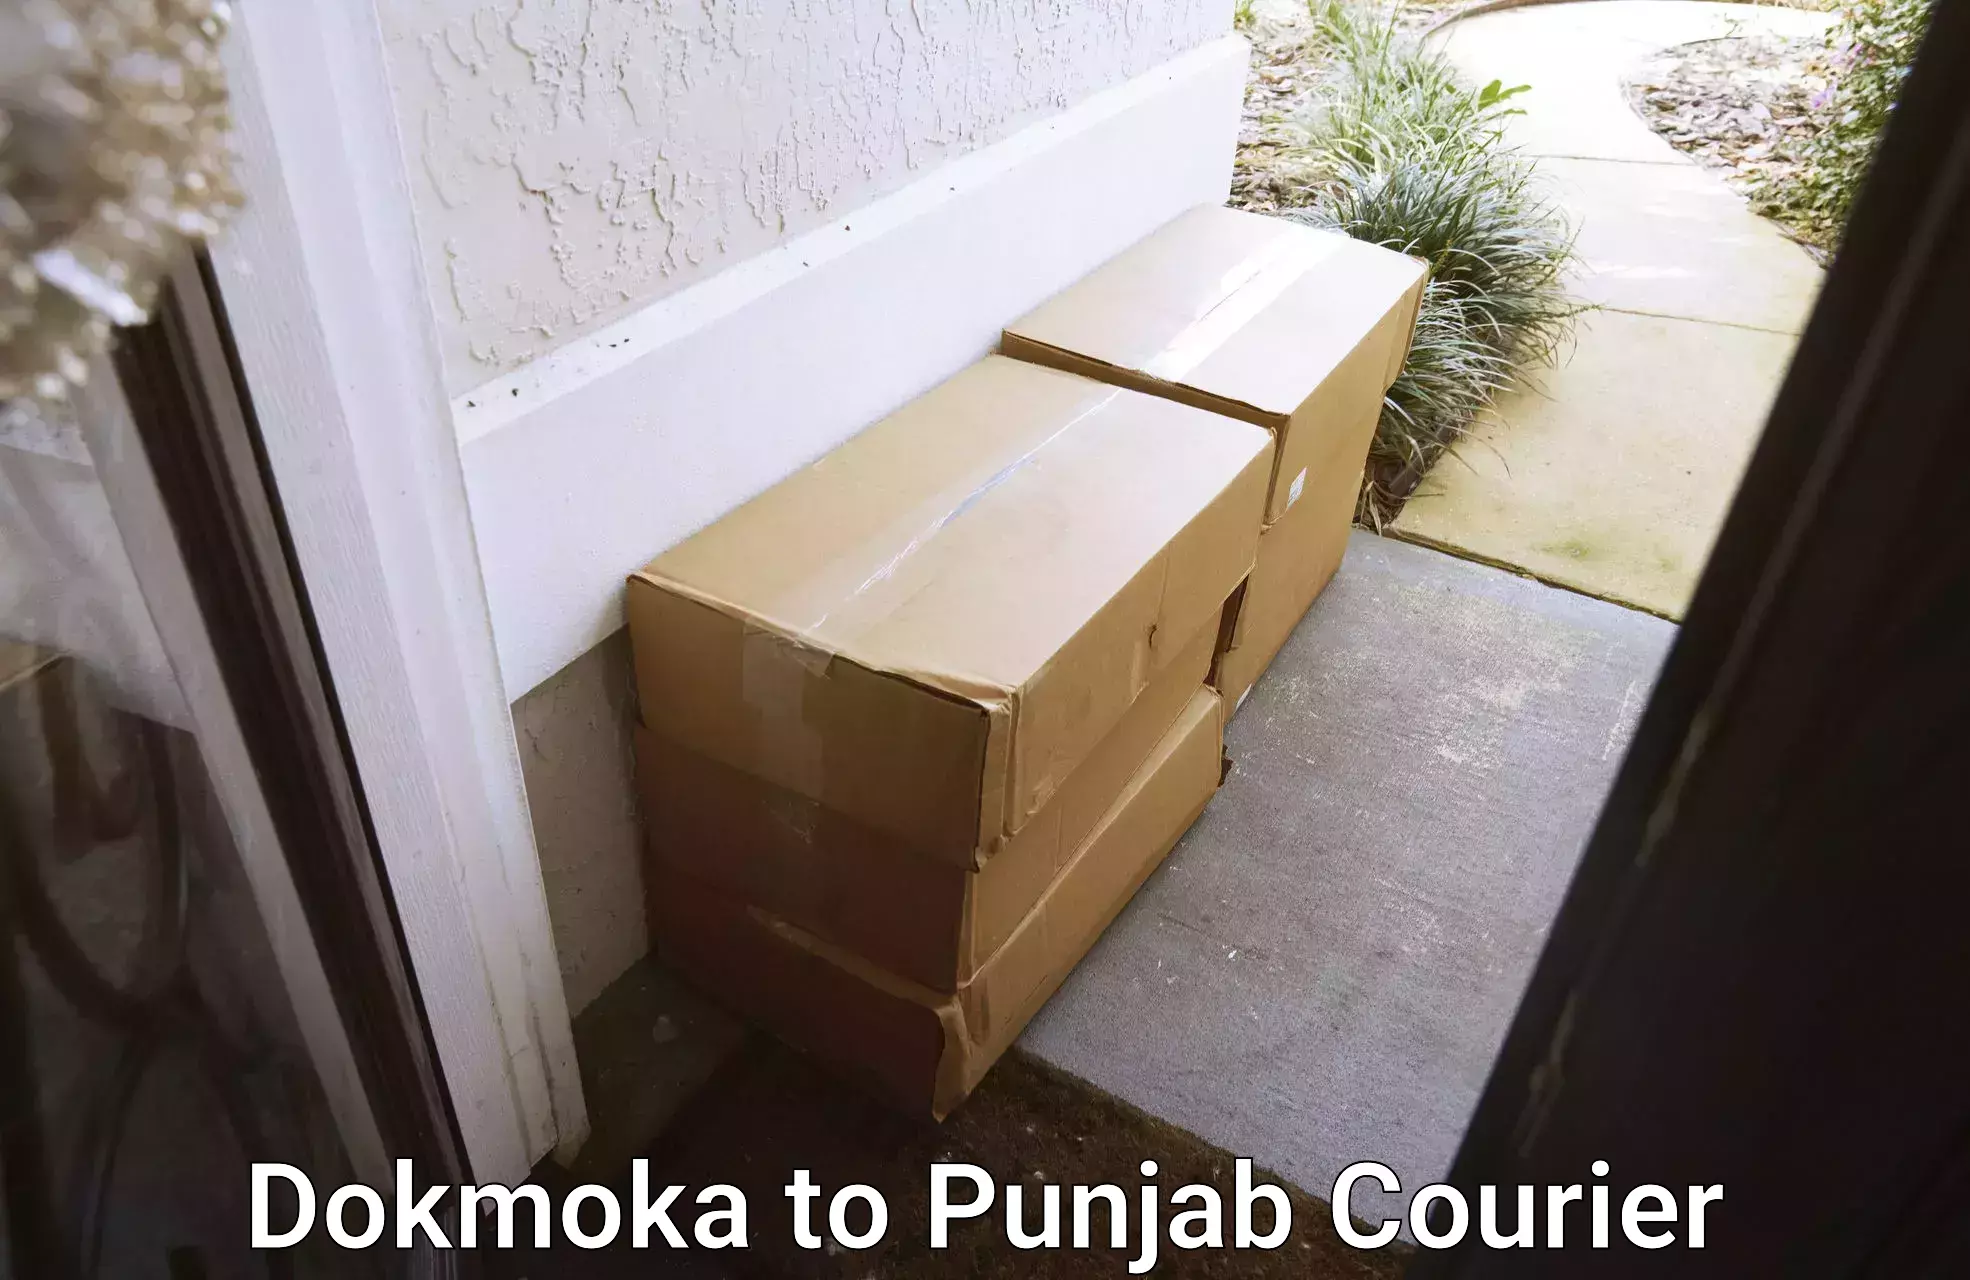 Bulk courier orders Dokmoka to Pathankot